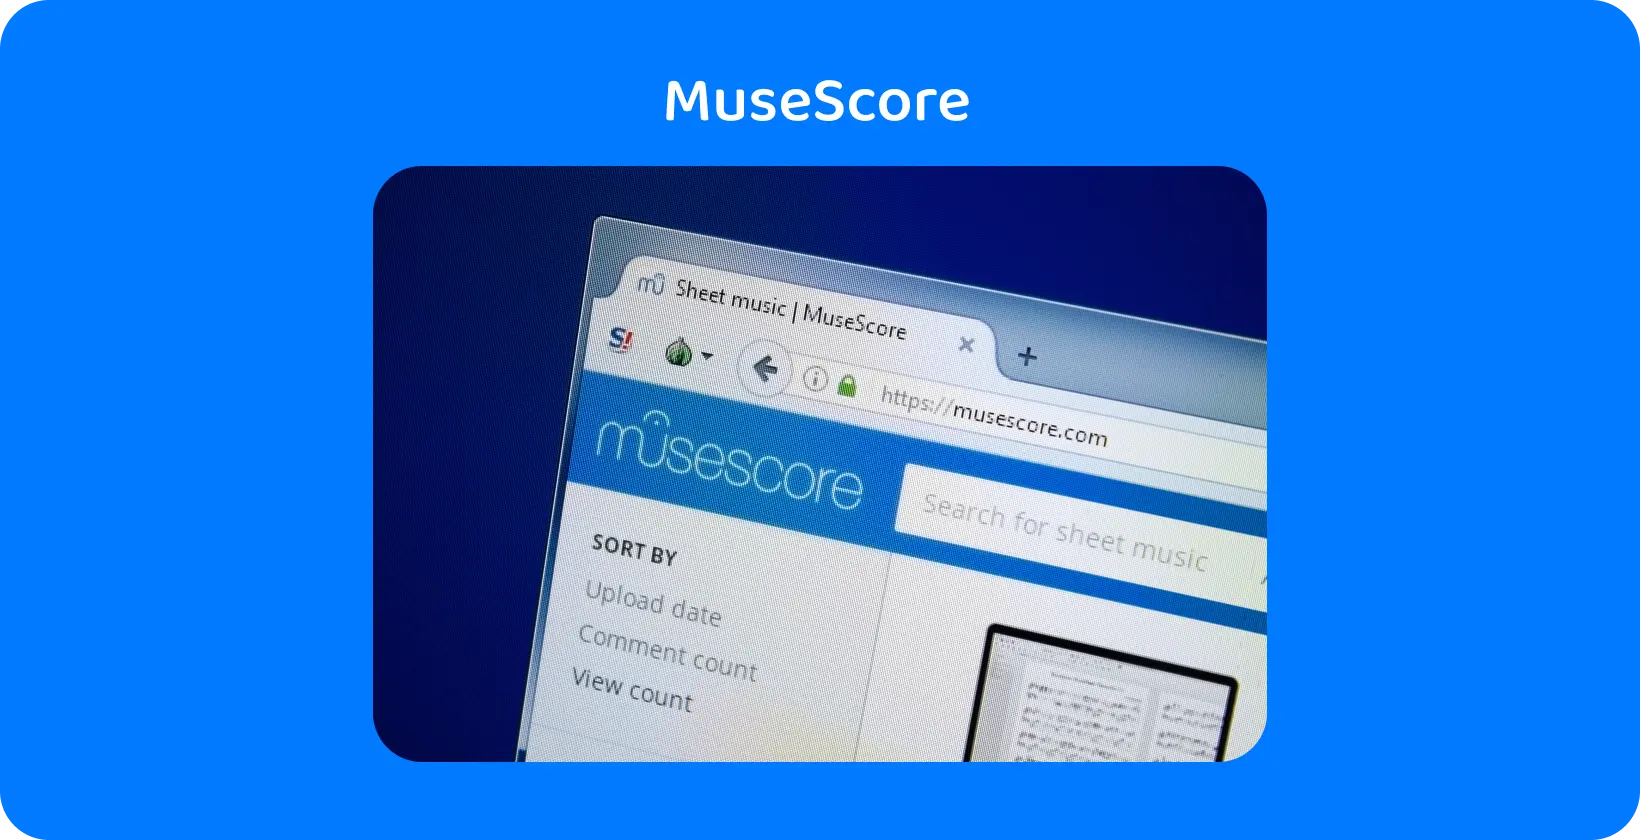 Lähikuva MuseScore verkkosivustosta, jossa korostetaan nuottihakua, joka on keskeinen työkalu äänen transkription ohjaukseen.